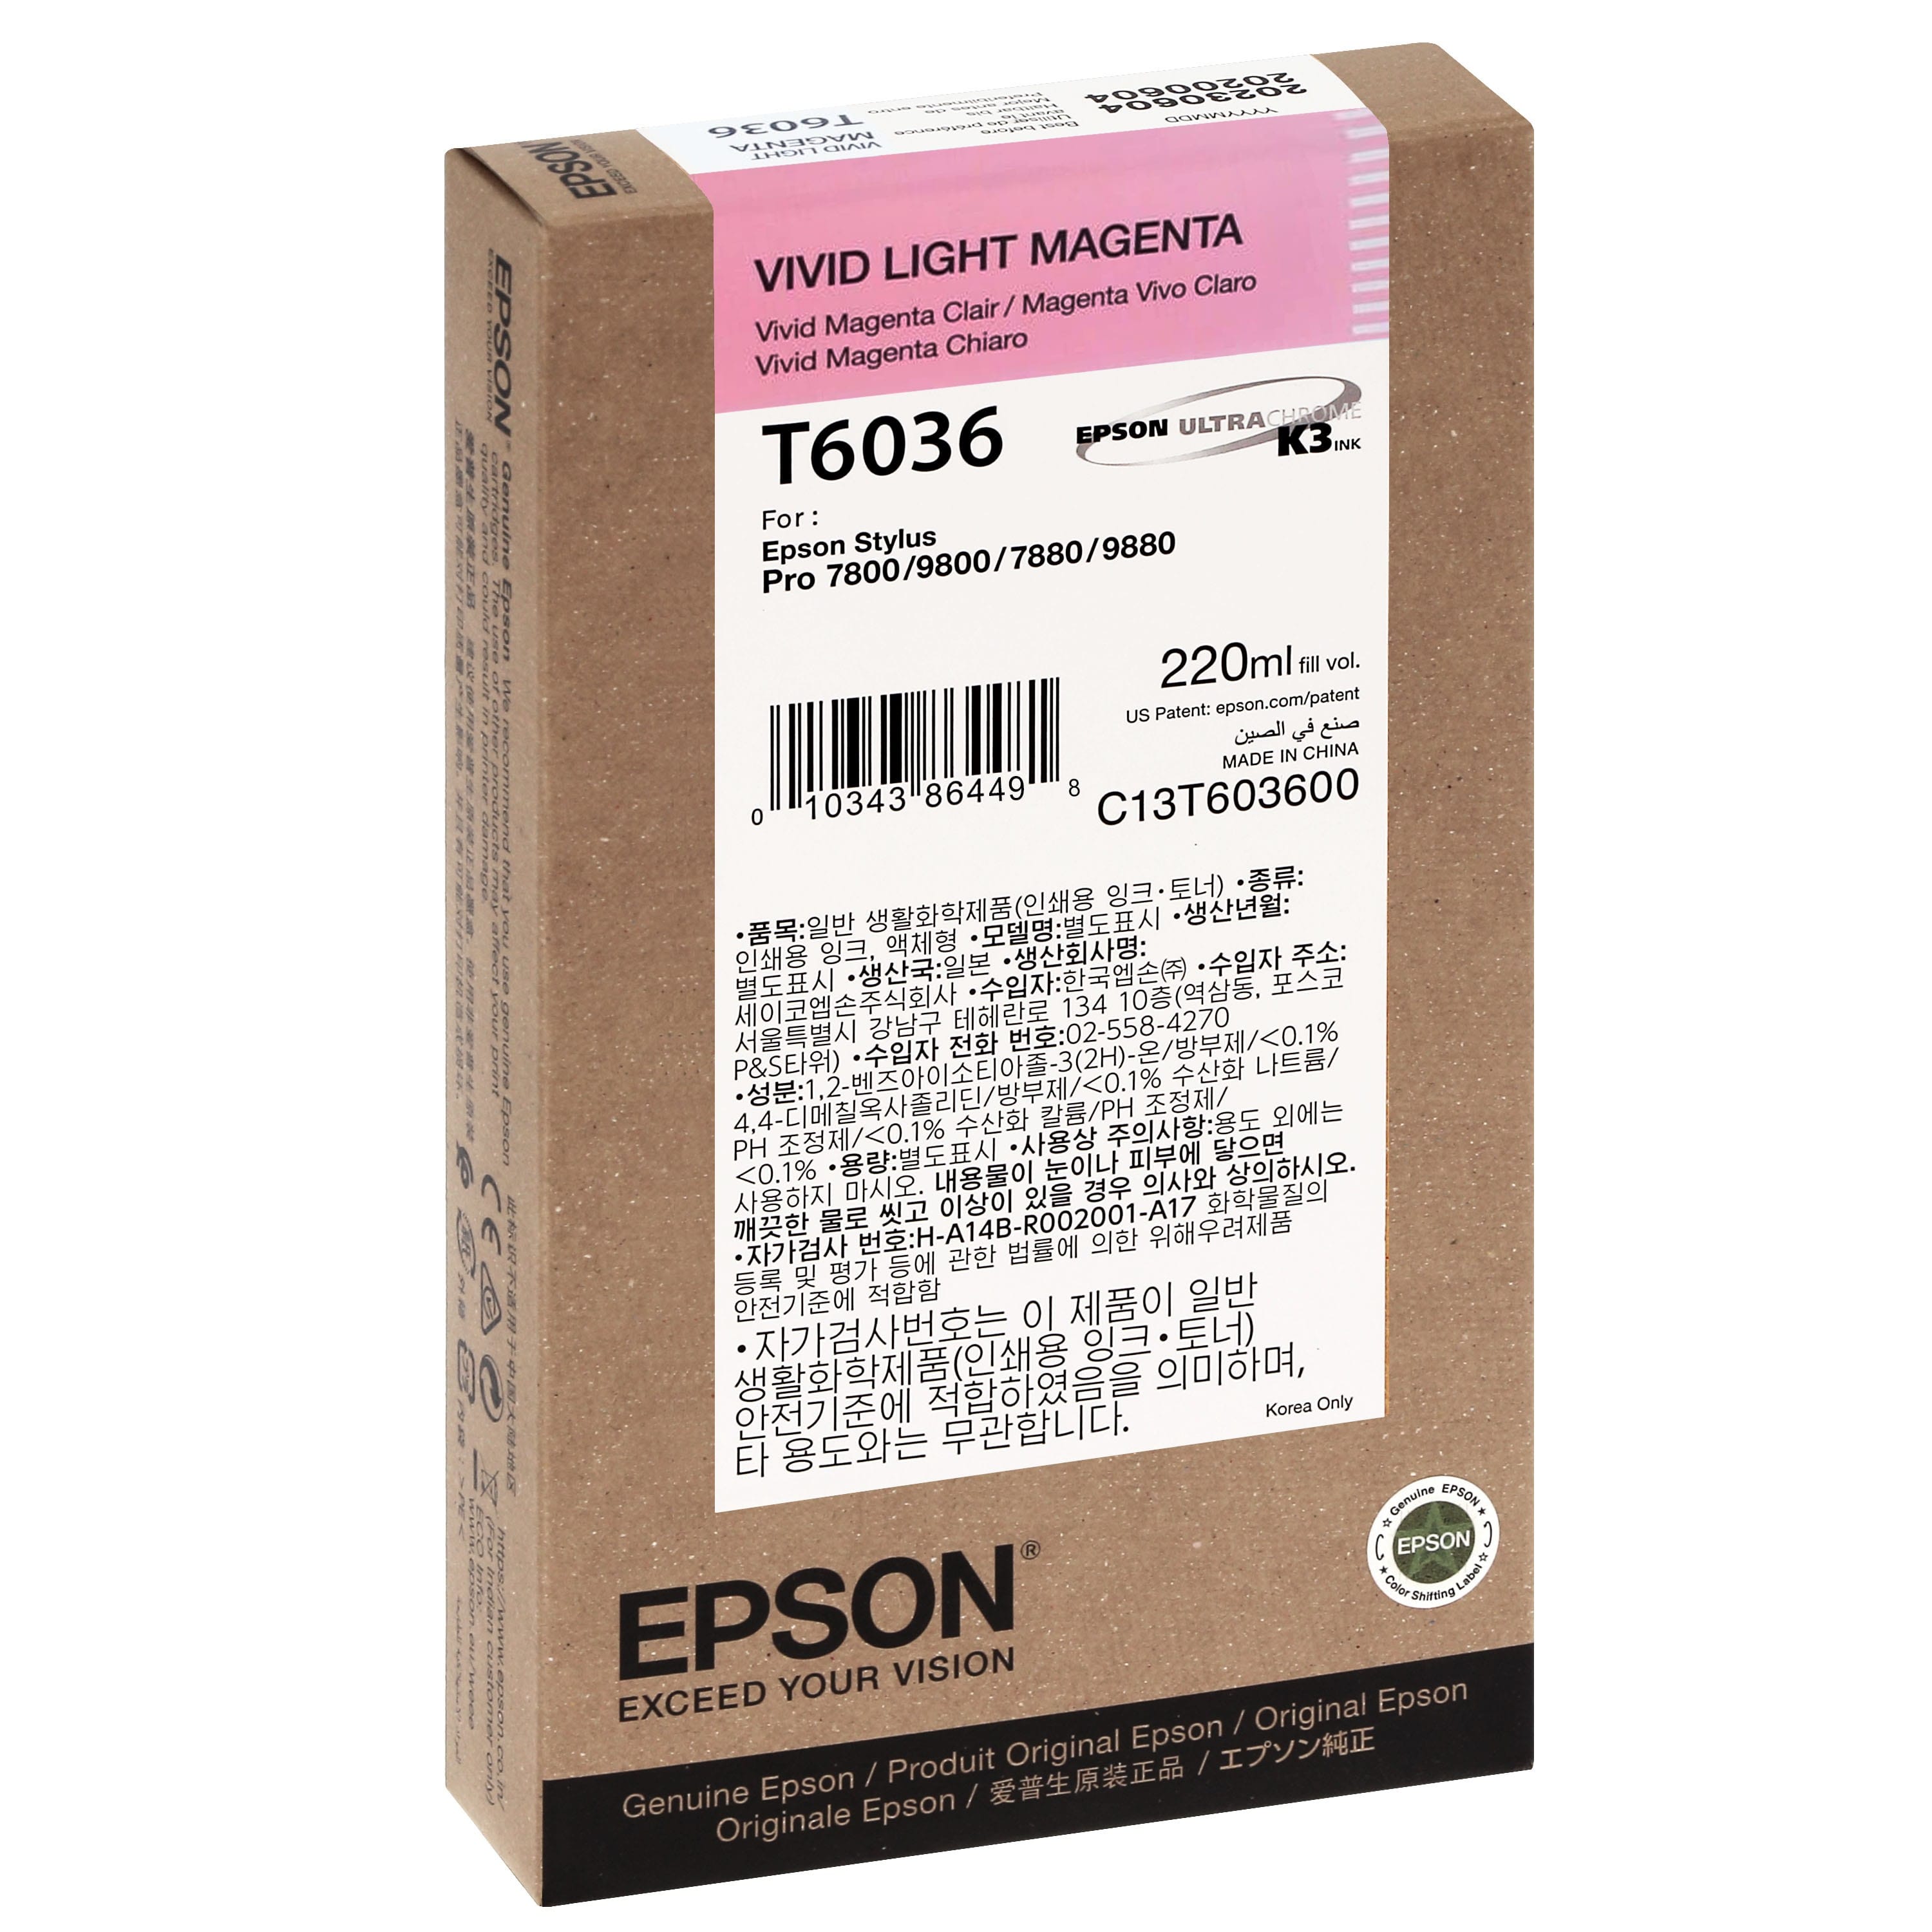 EPSON - Cartouche d'encre traceur T6036 Pour imprimante 7880/9880 Vivid Magenta clair - 220ml